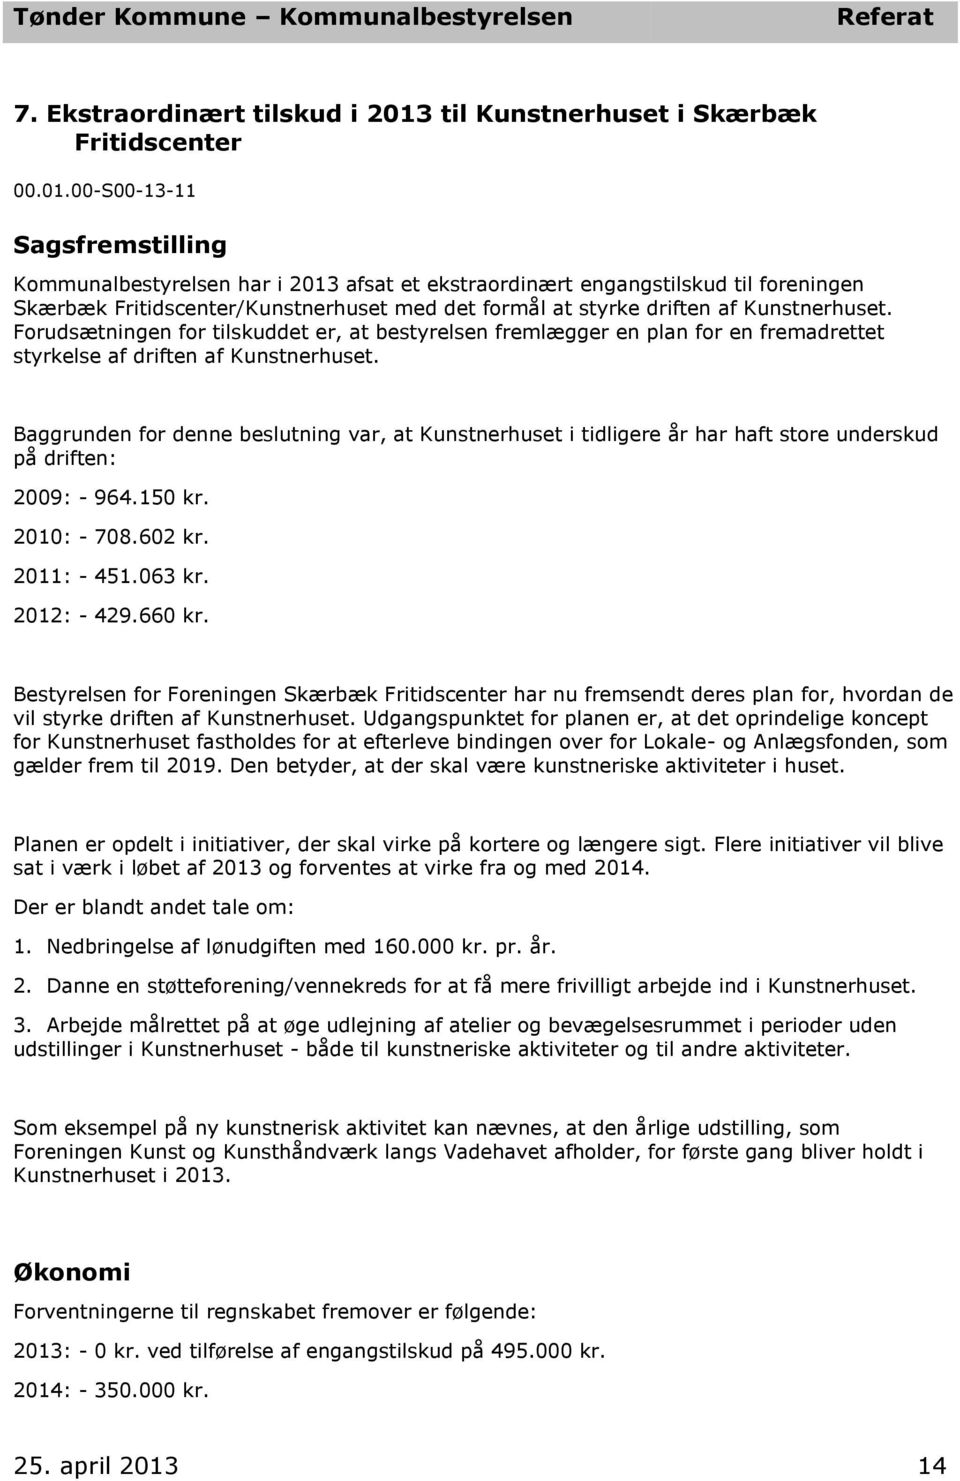 00-S00-13-11 Sagsfremstilling Kommunalbestyrelsen har i 2013 afs et ekstraordinært engangstilskud til foreningen Skærbæk Fritidscenter/Kunstnerhuset med det formål styrke driften af Kunstnerhuset.